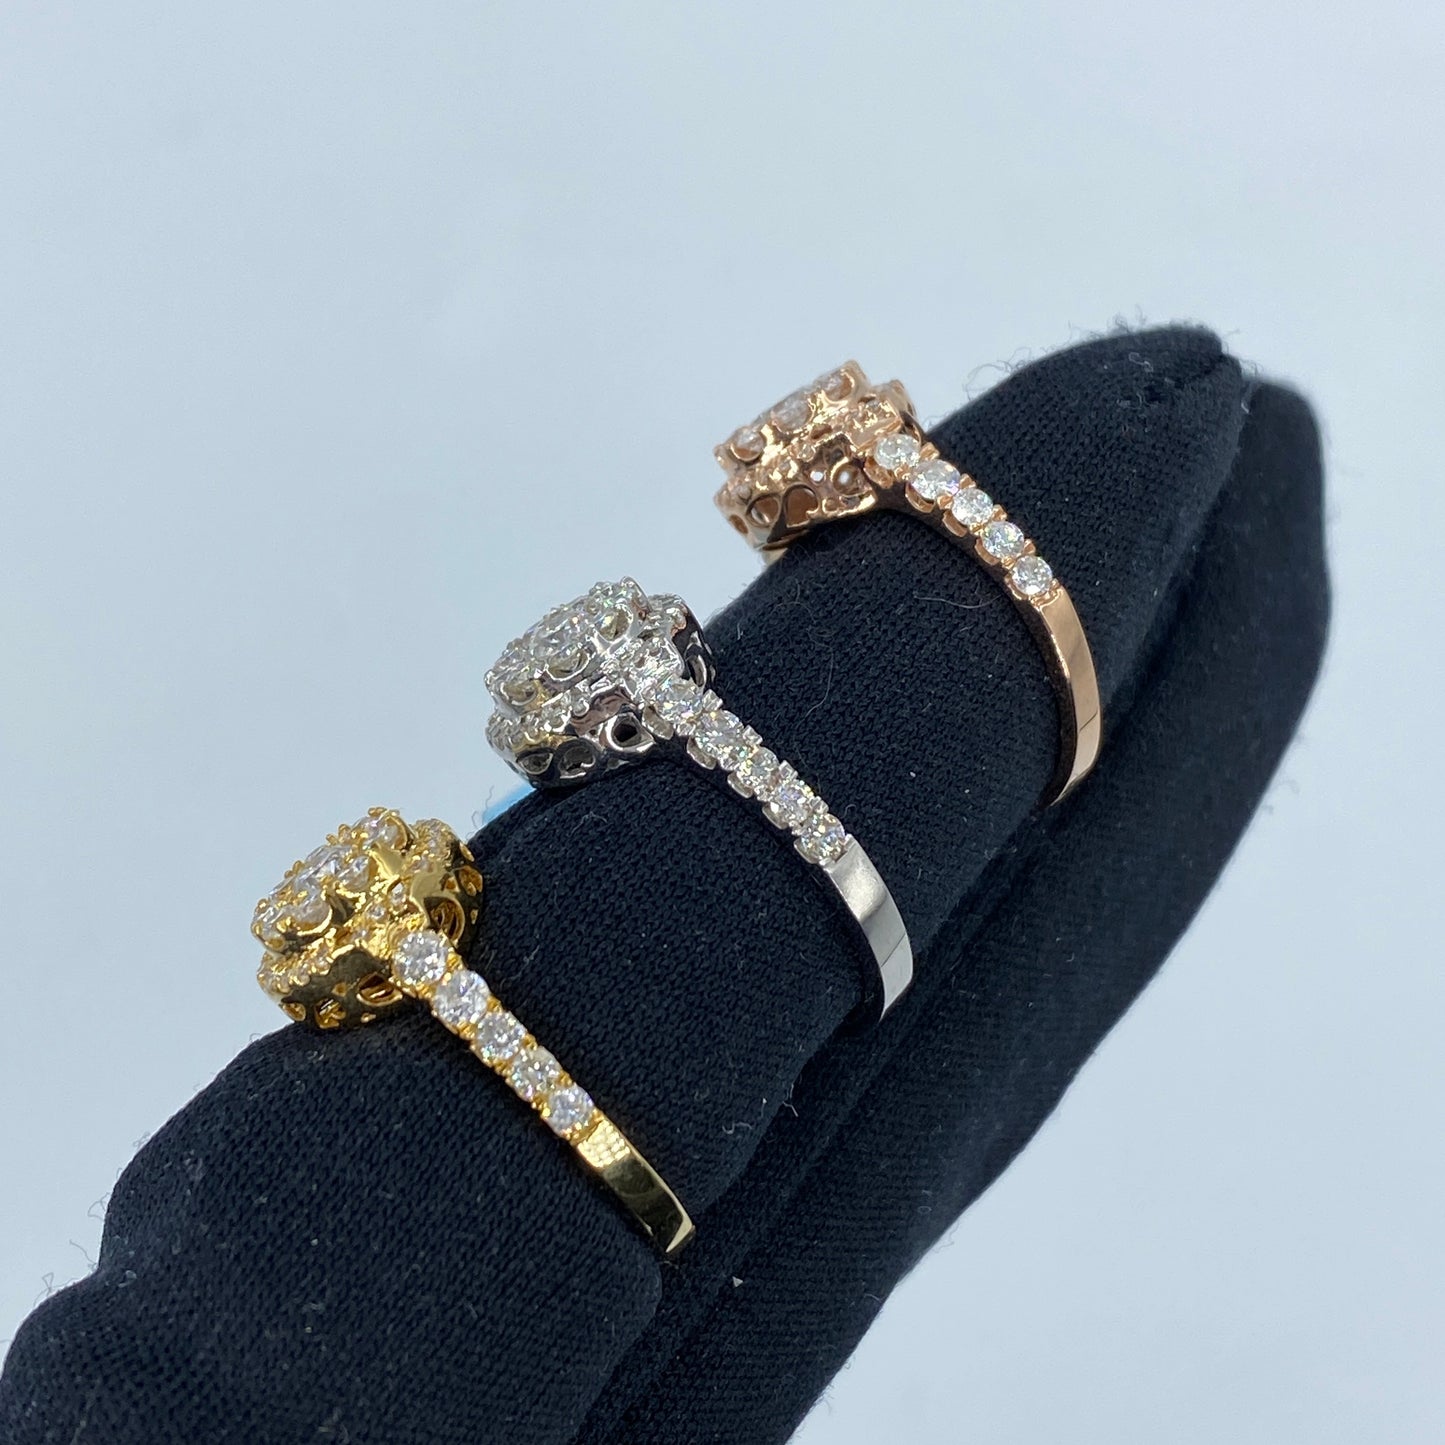 14K Sienna Halo Circle Diamond Engagement Ring